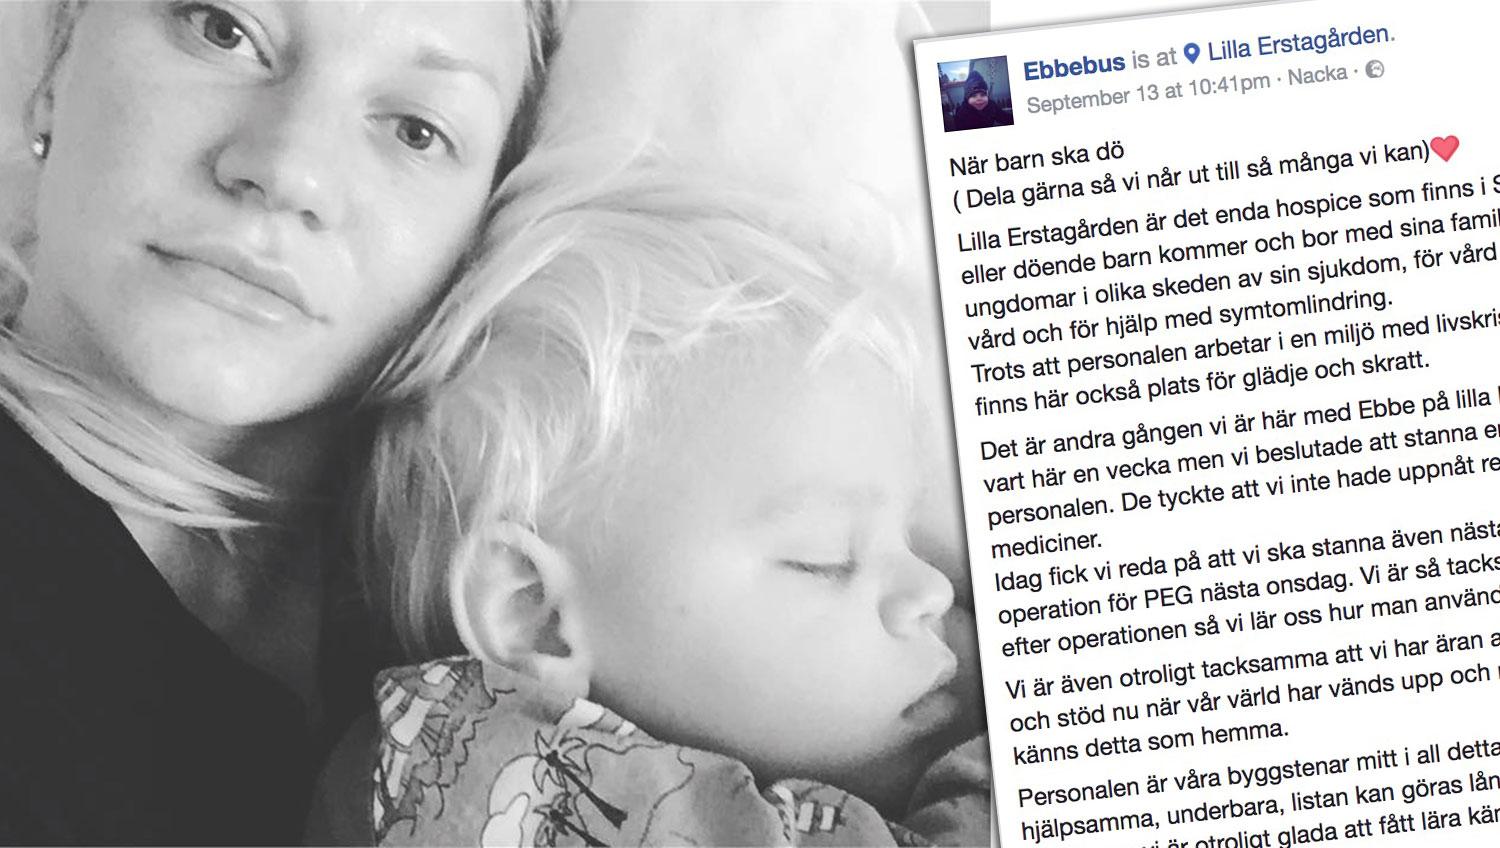 Niina Jämsén Tingströms inlägg har delats nästan 2 000 gånger på Facebook.